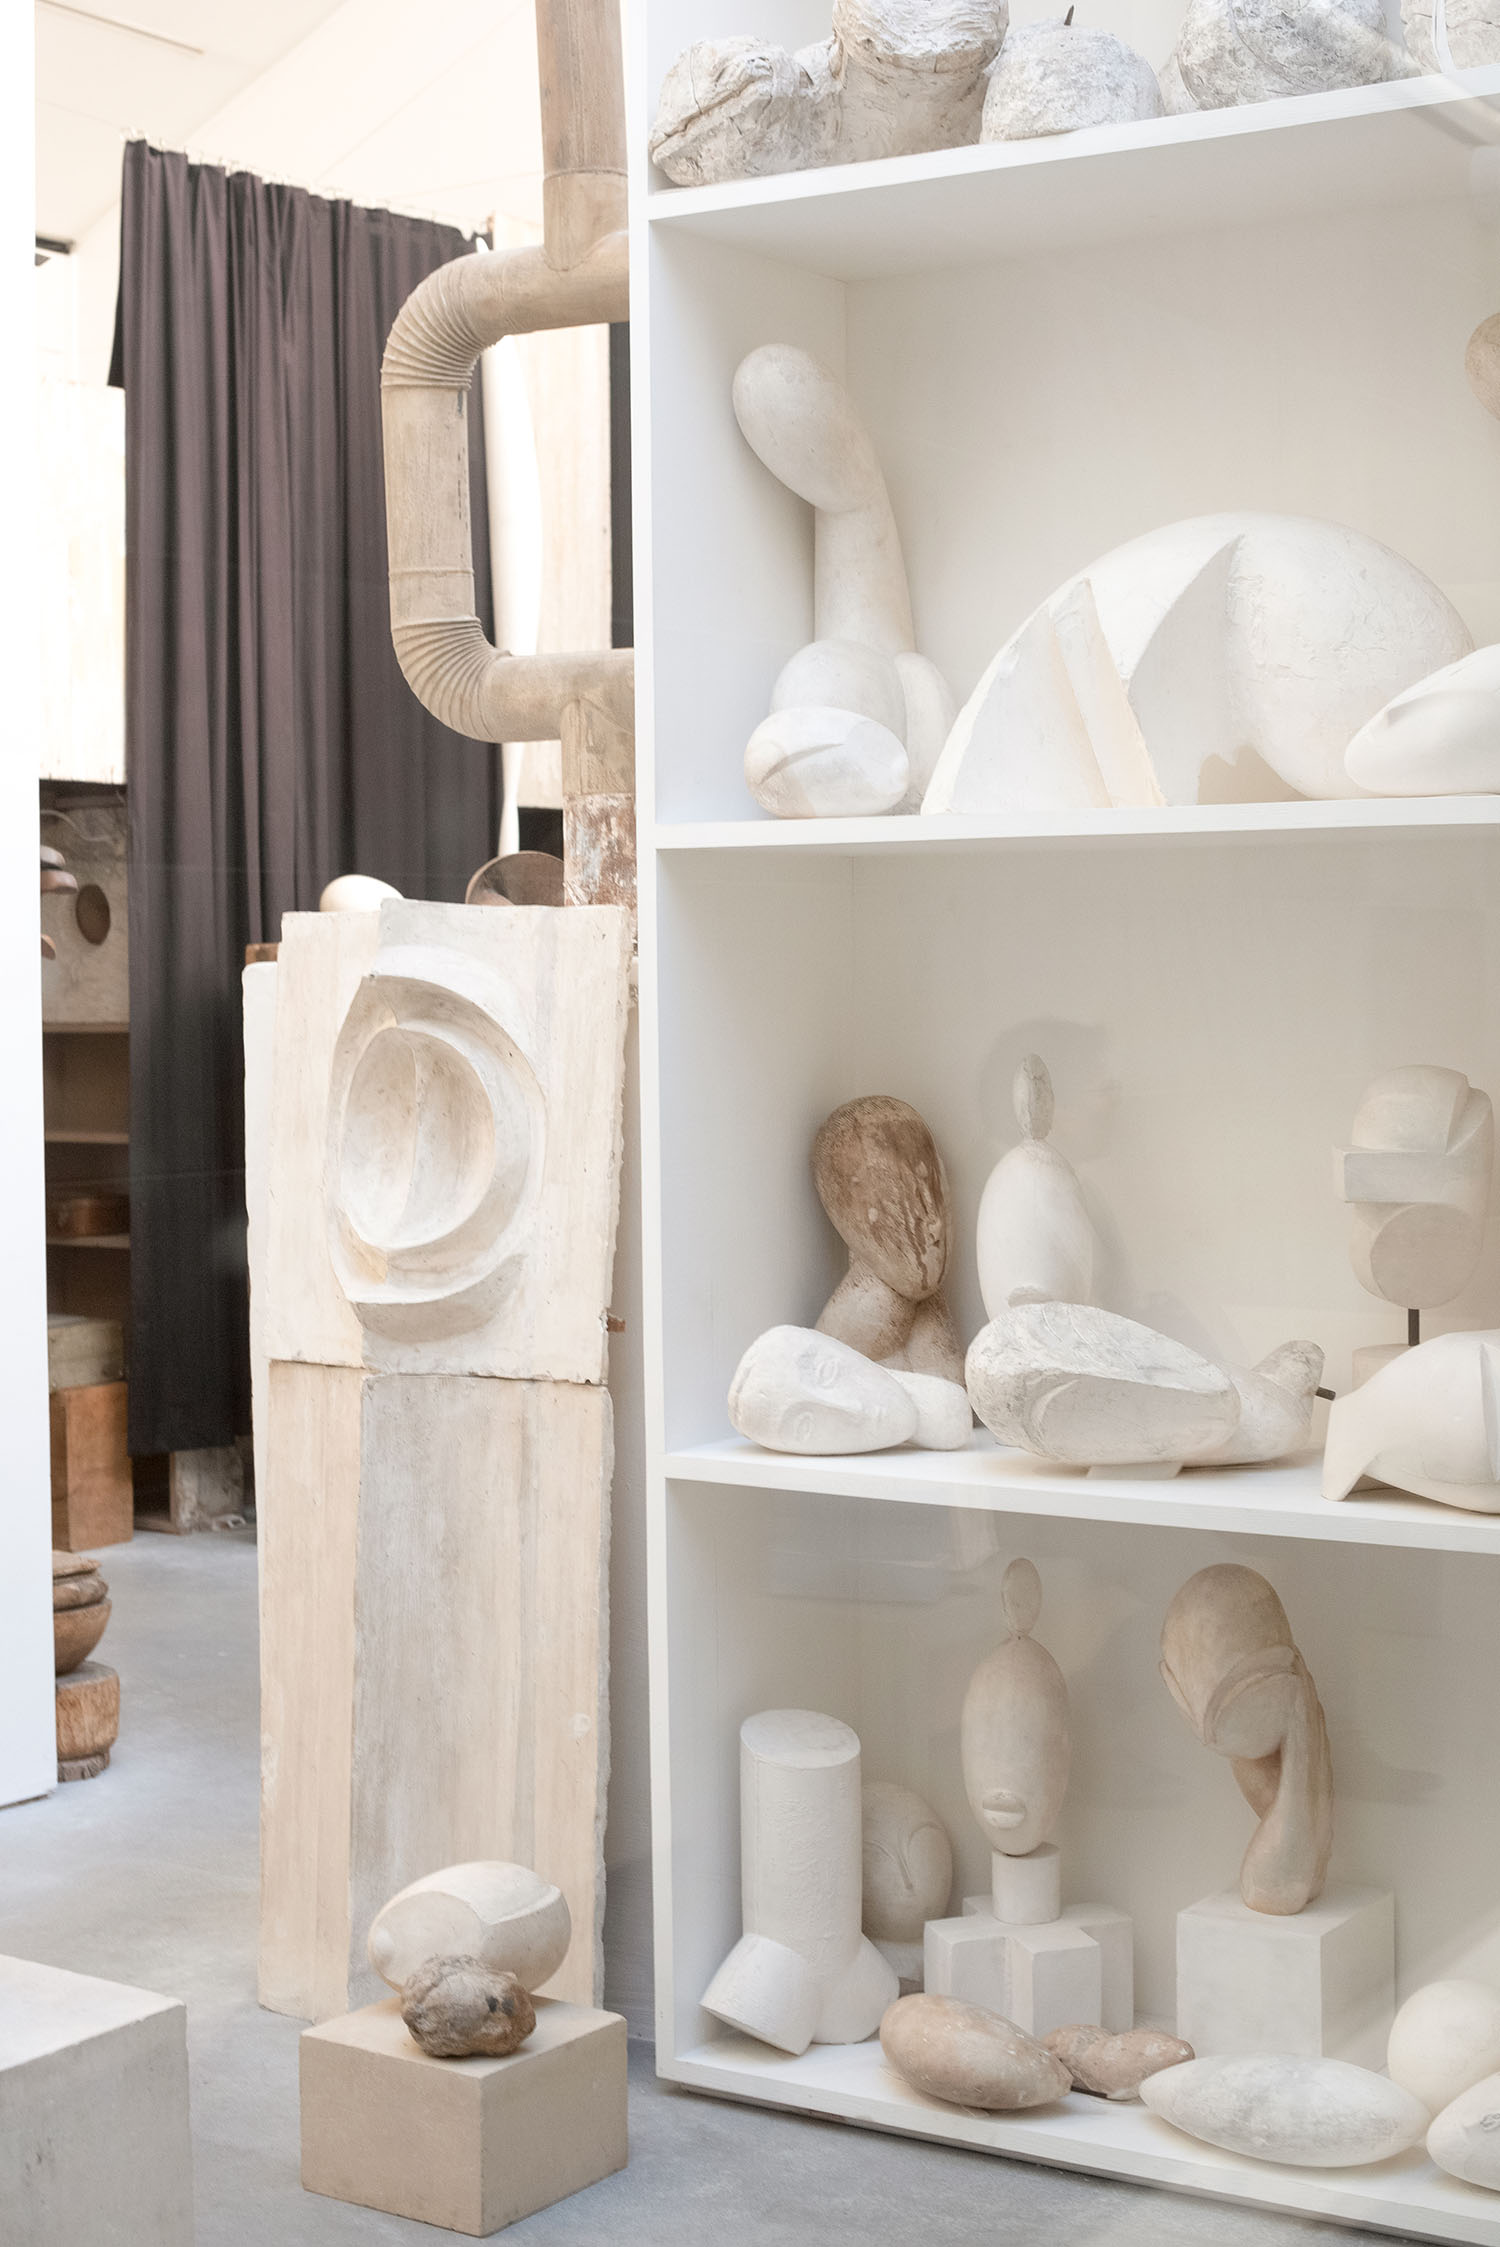 Coco & Vera - Shelf of sculptures in Atelier Brancusi in Paris, France